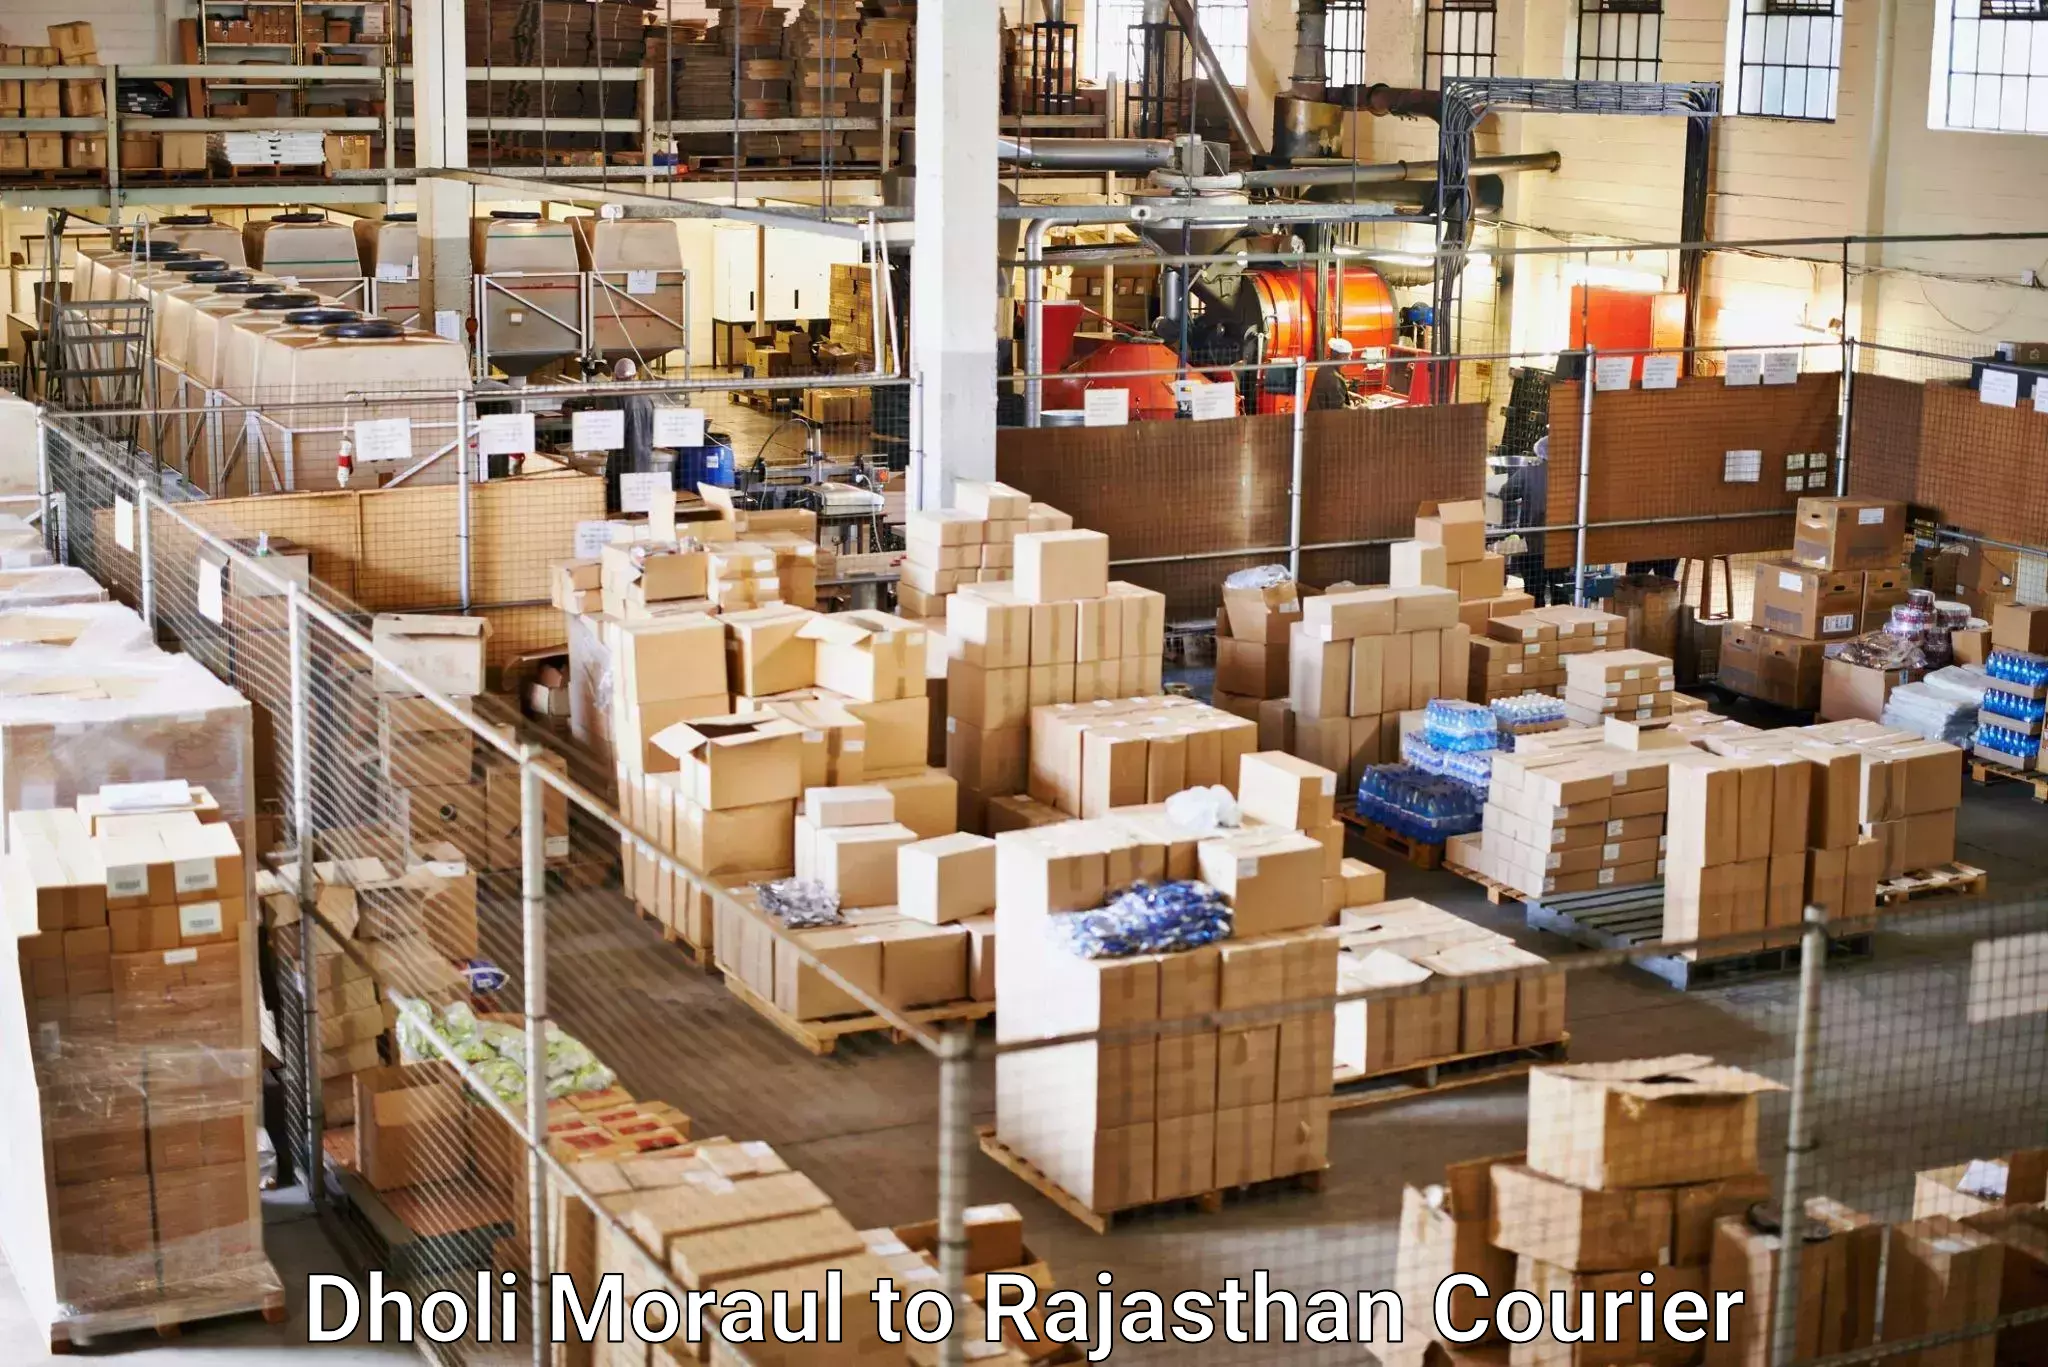 Courier service comparison Dholi Moraul to Suratgarh